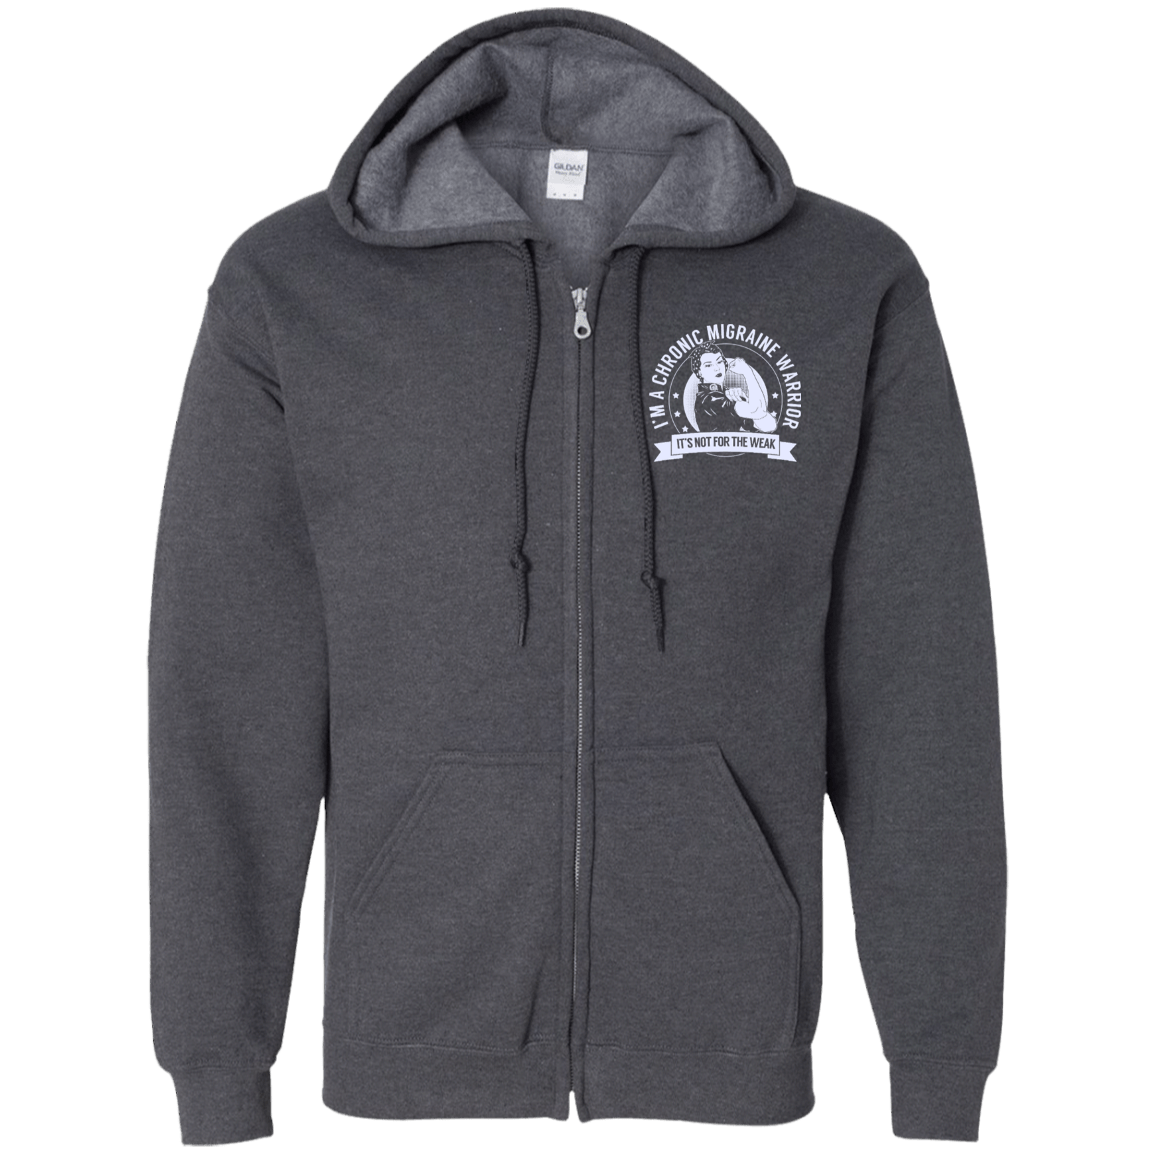 Chronic Migraine Warrior NFTW Zip Up Hooded Sweatshirt - The Unchargeables